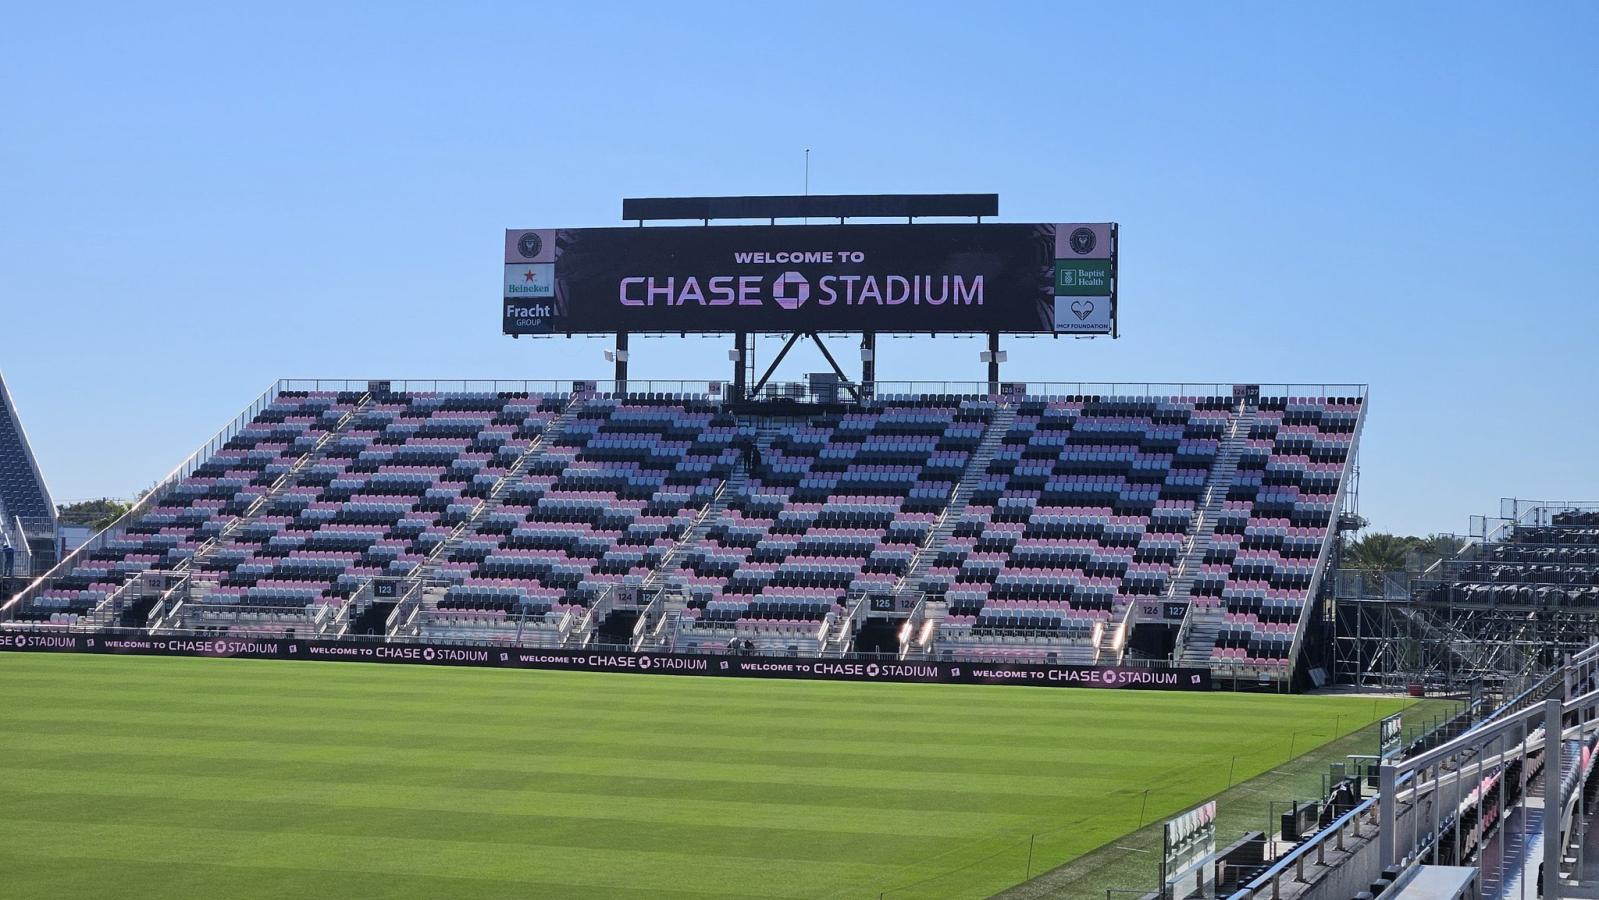 Imagen La nueva csa de Inter Miami pasó a llamarse Chase Stadium. Se incrementó la capacidad en 1200 asientos.